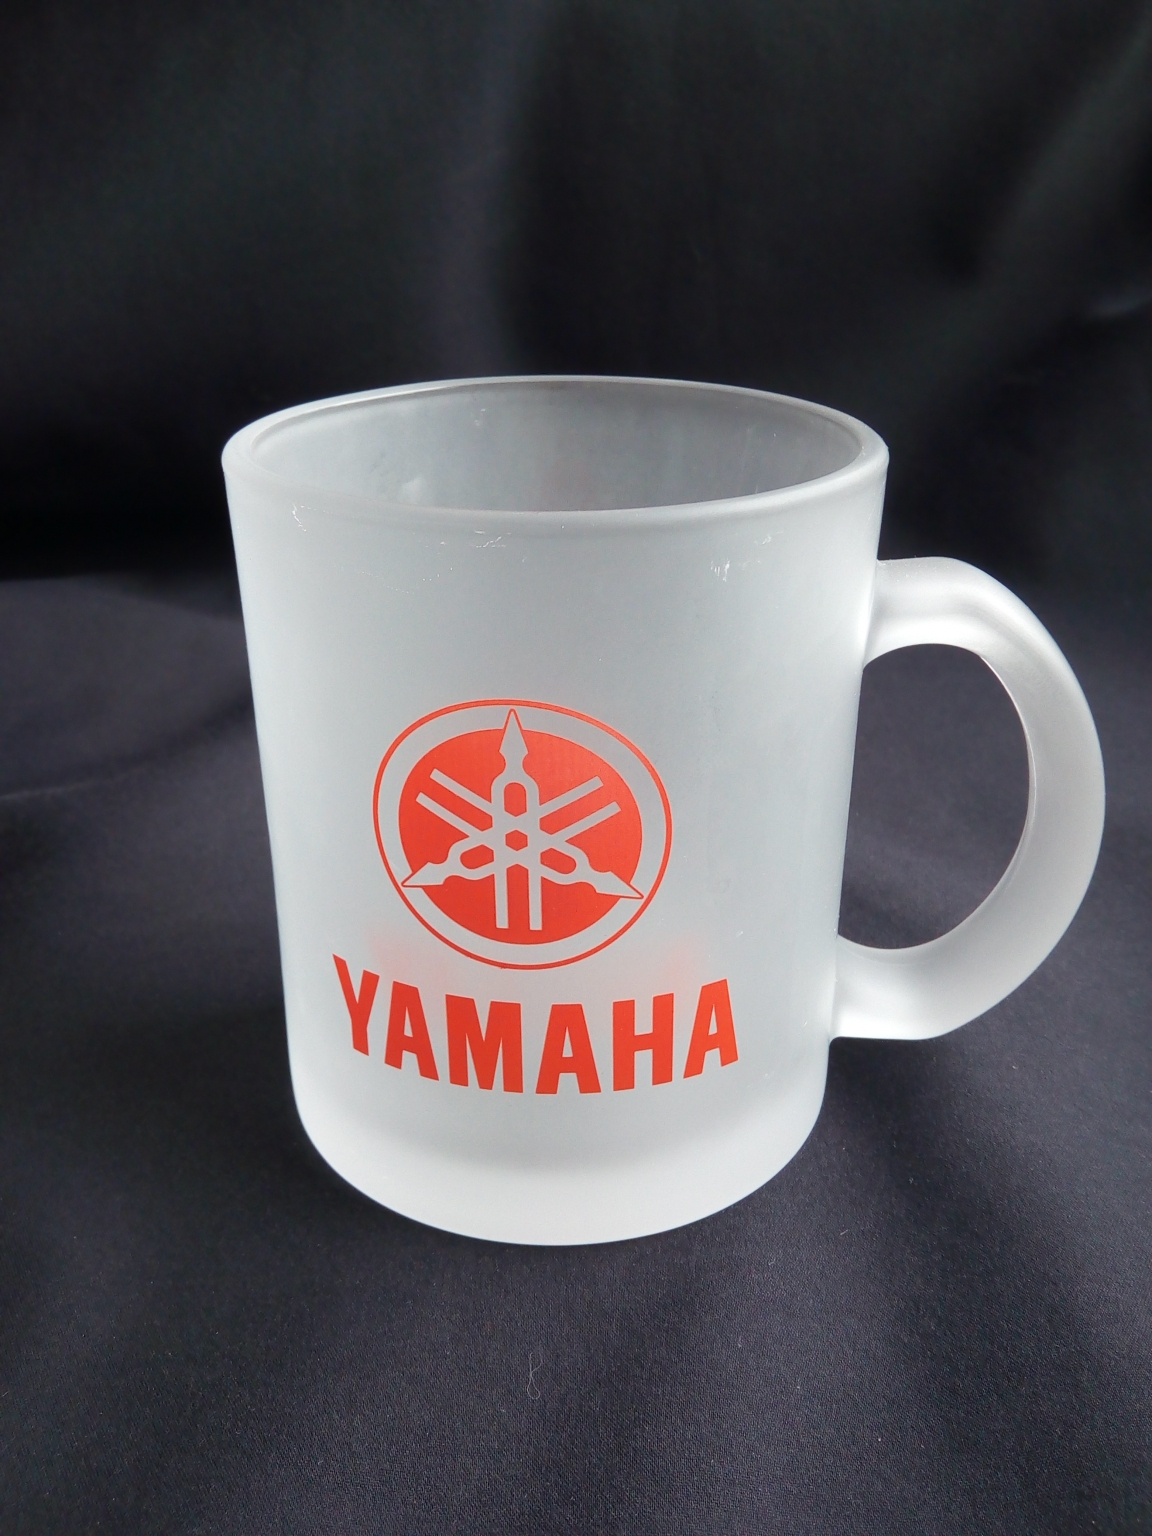  - Original Yamaha Bekleidung und Merchandise 4